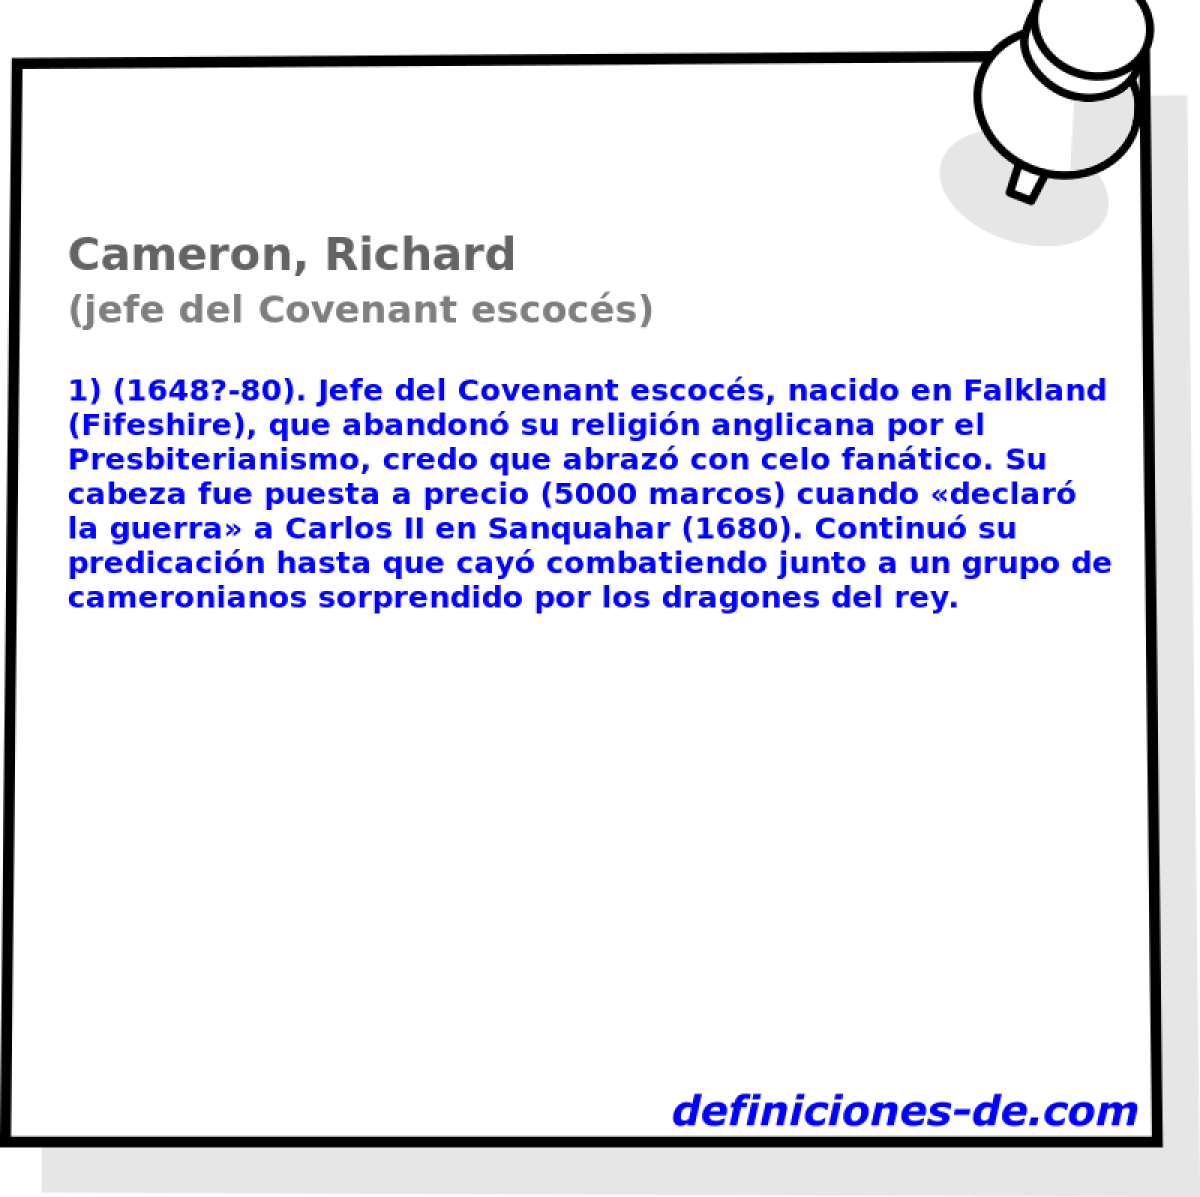 Cameron, Richard (jefe del Covenant escocs)